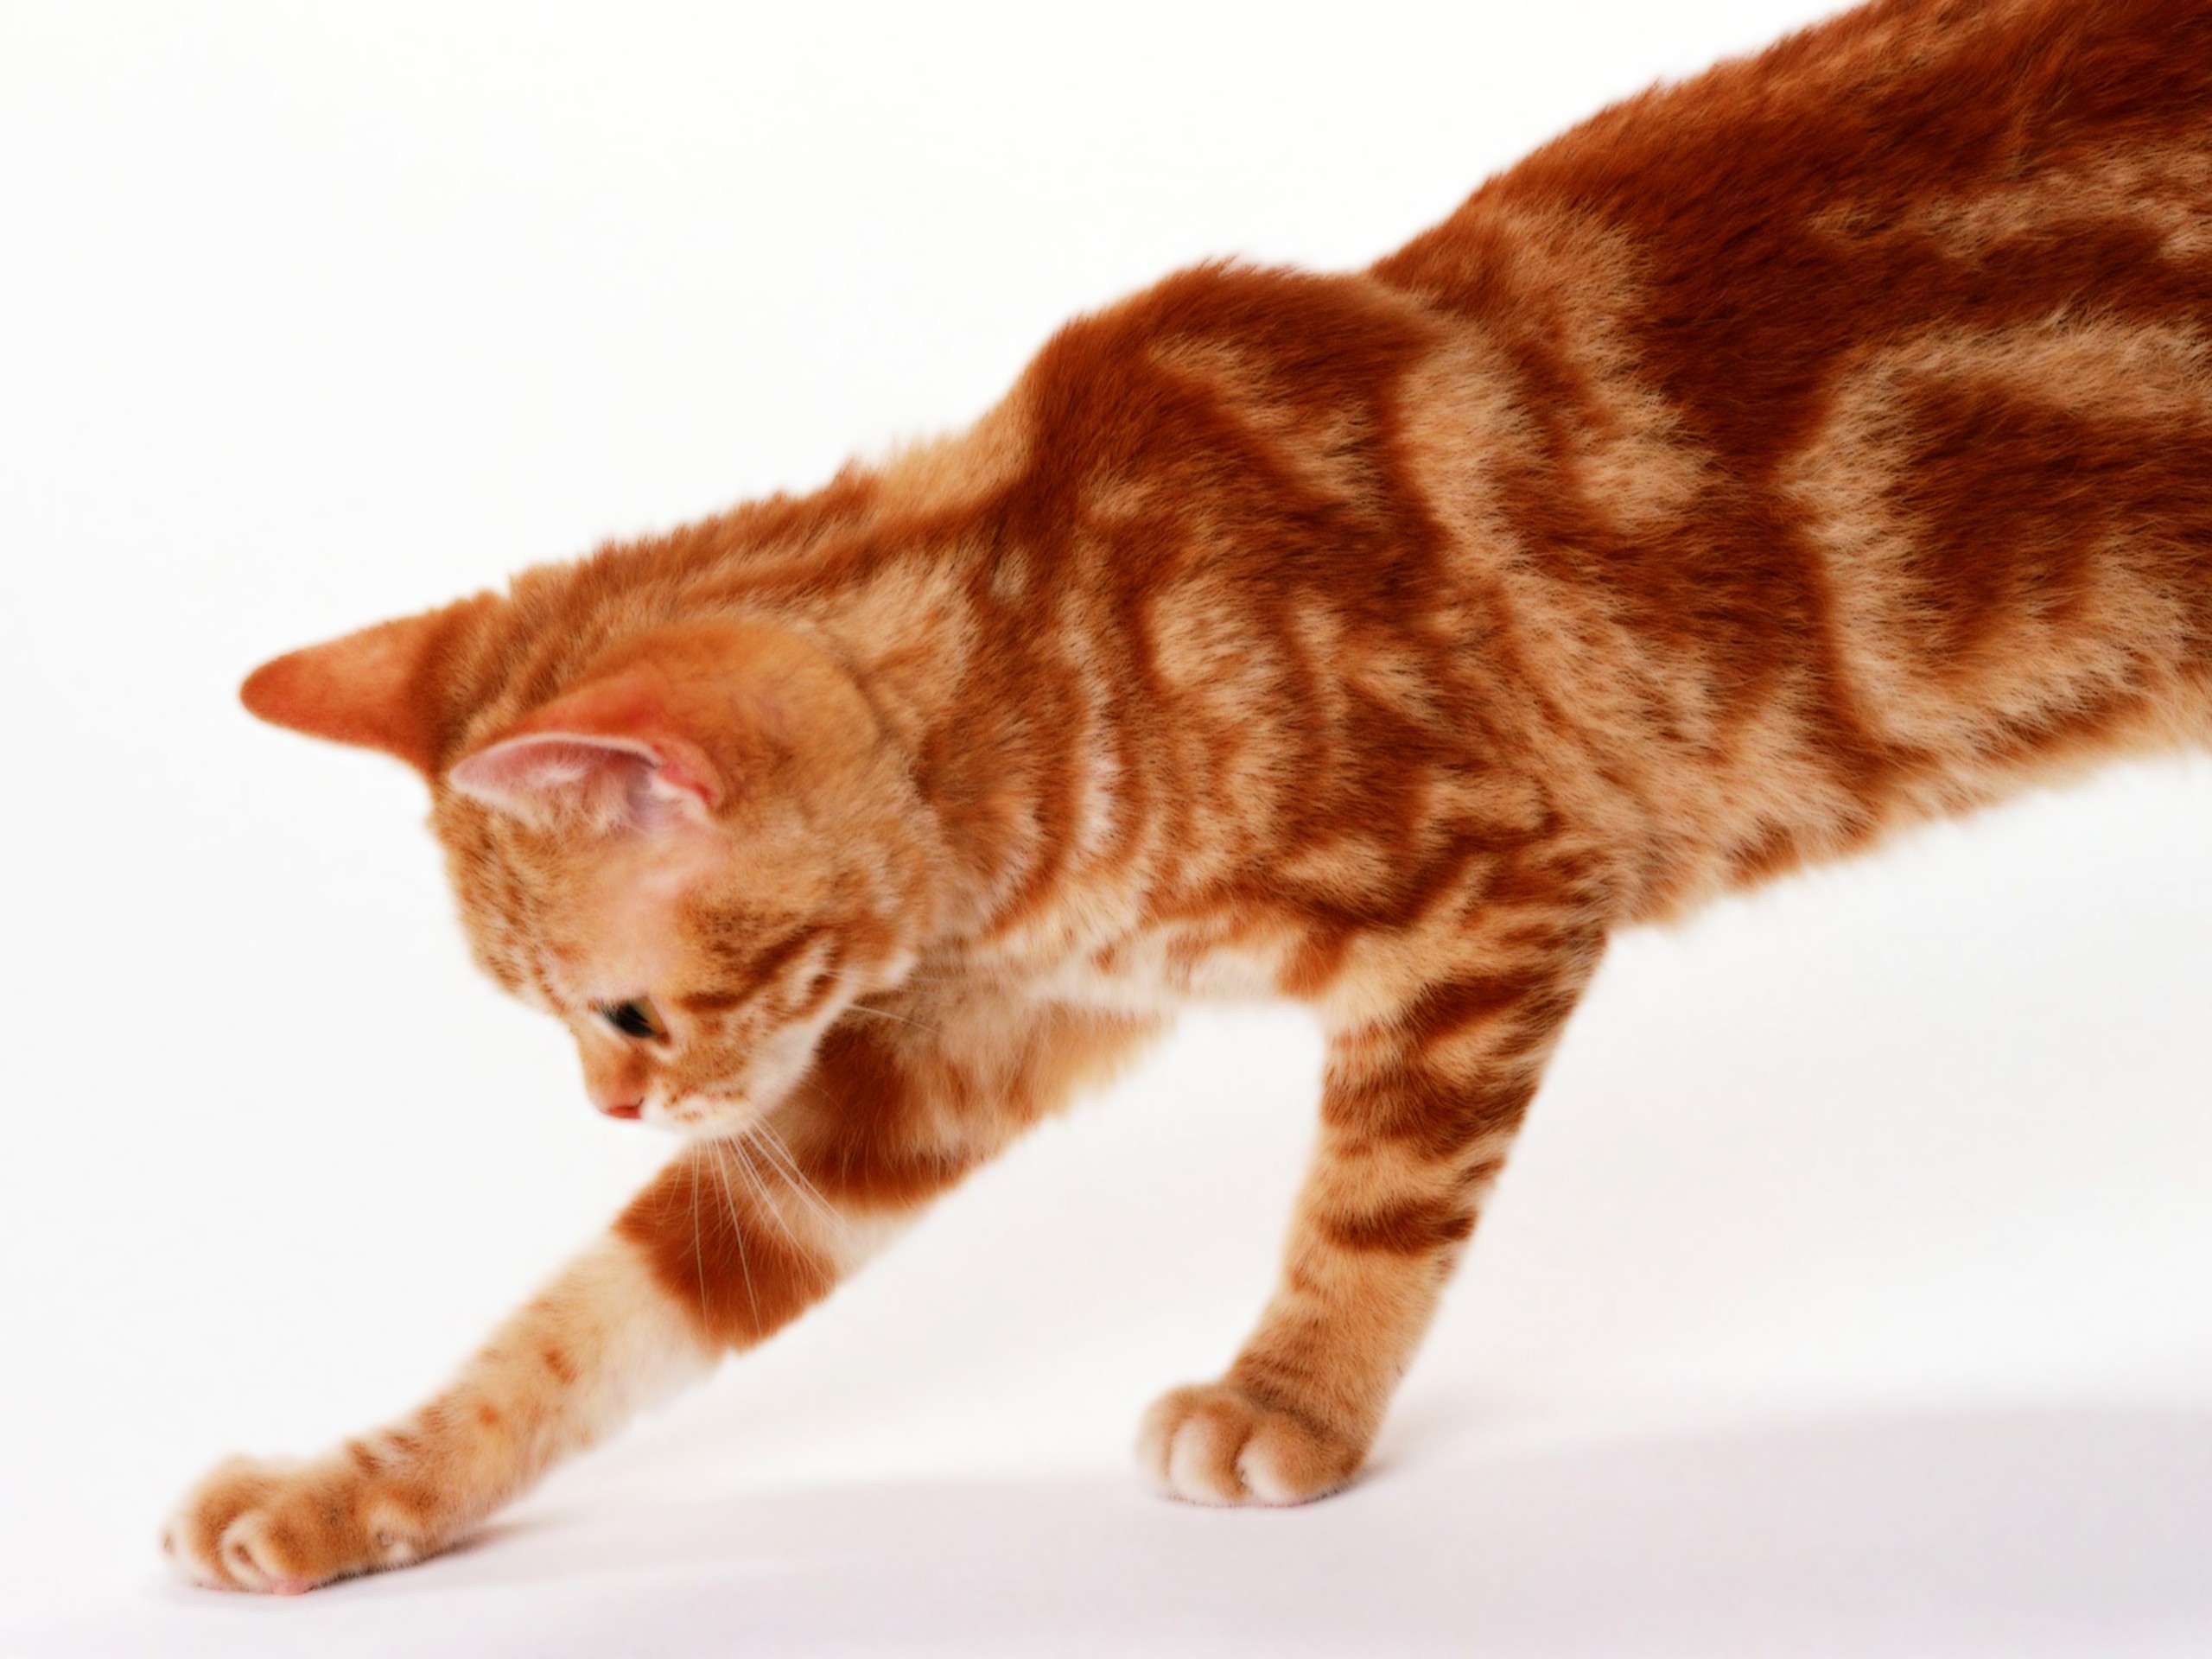 Рыжая полосатая кошка. Европейская короткошерстная табби рыжий. Европейская короткошерстная кошка рыжая. Европейская короткошерстная кошка рыжего окраса. Бенгальская короткошерстная кошка рыжая.